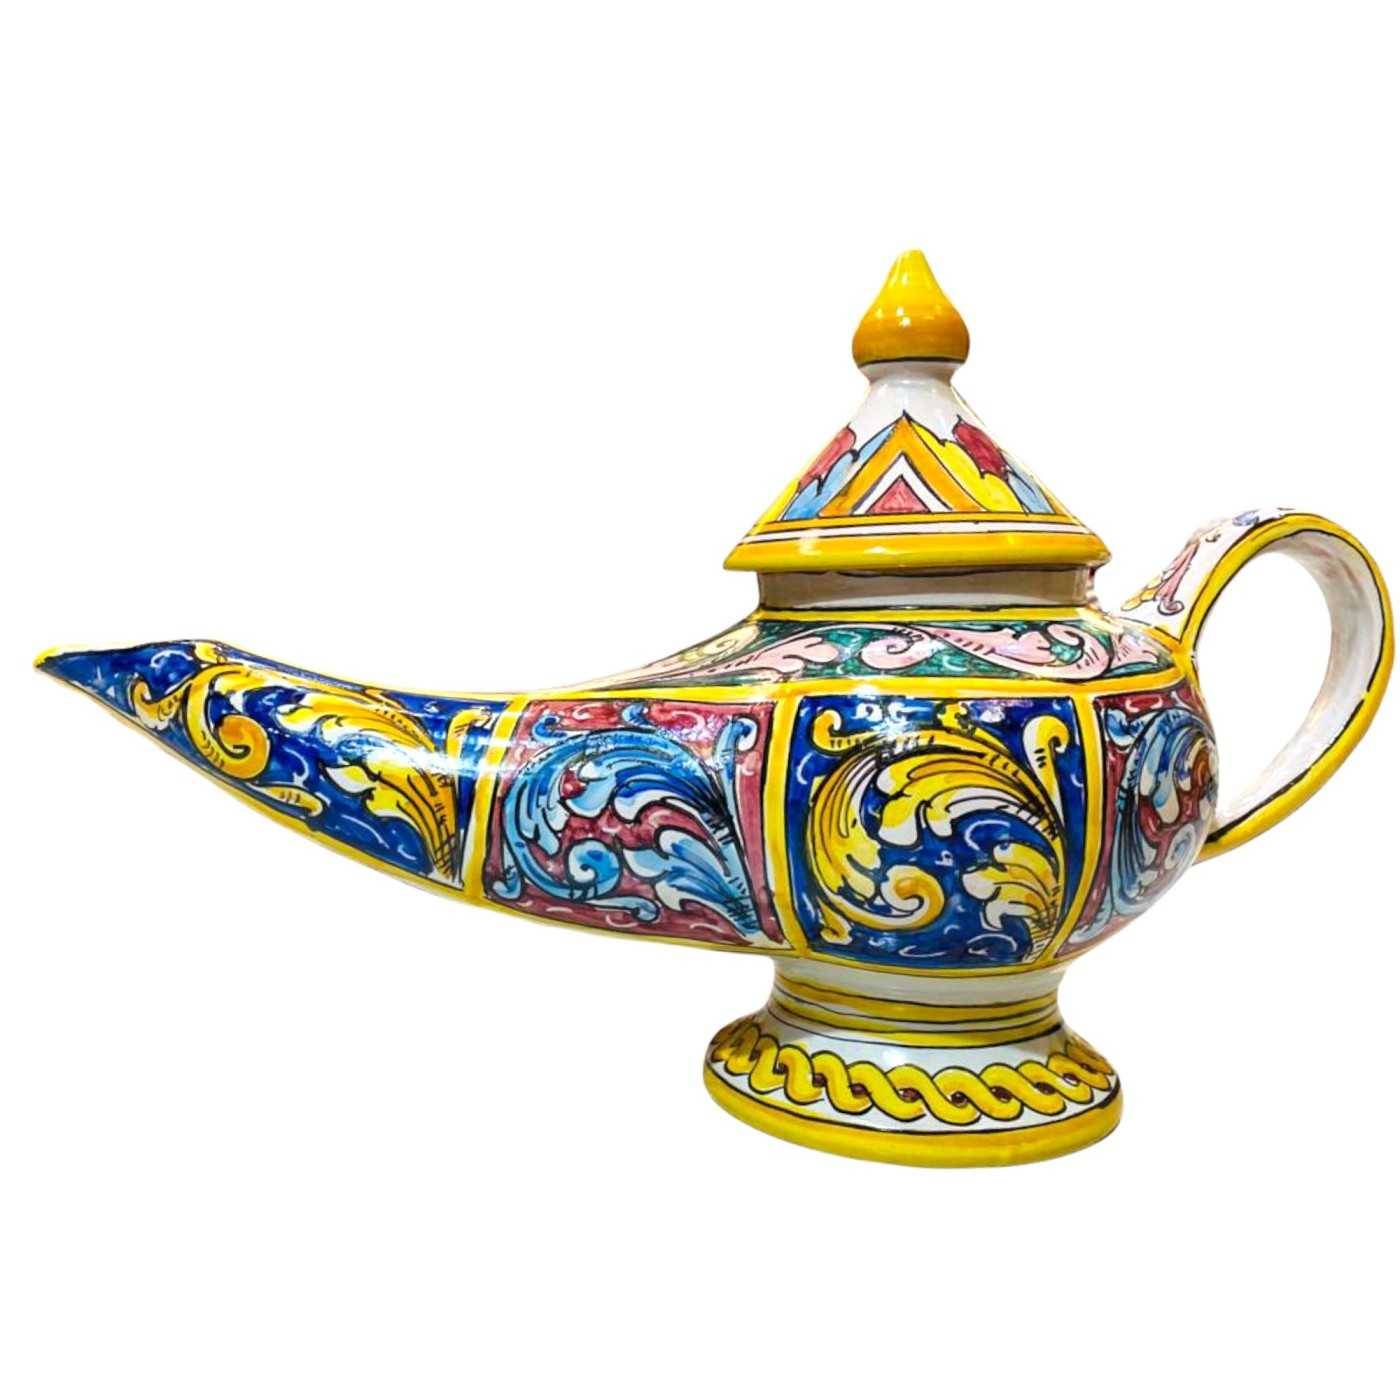 Lámpara Aladino en cerámica preciosa con decoración barroca - Medidas cm  40x30h